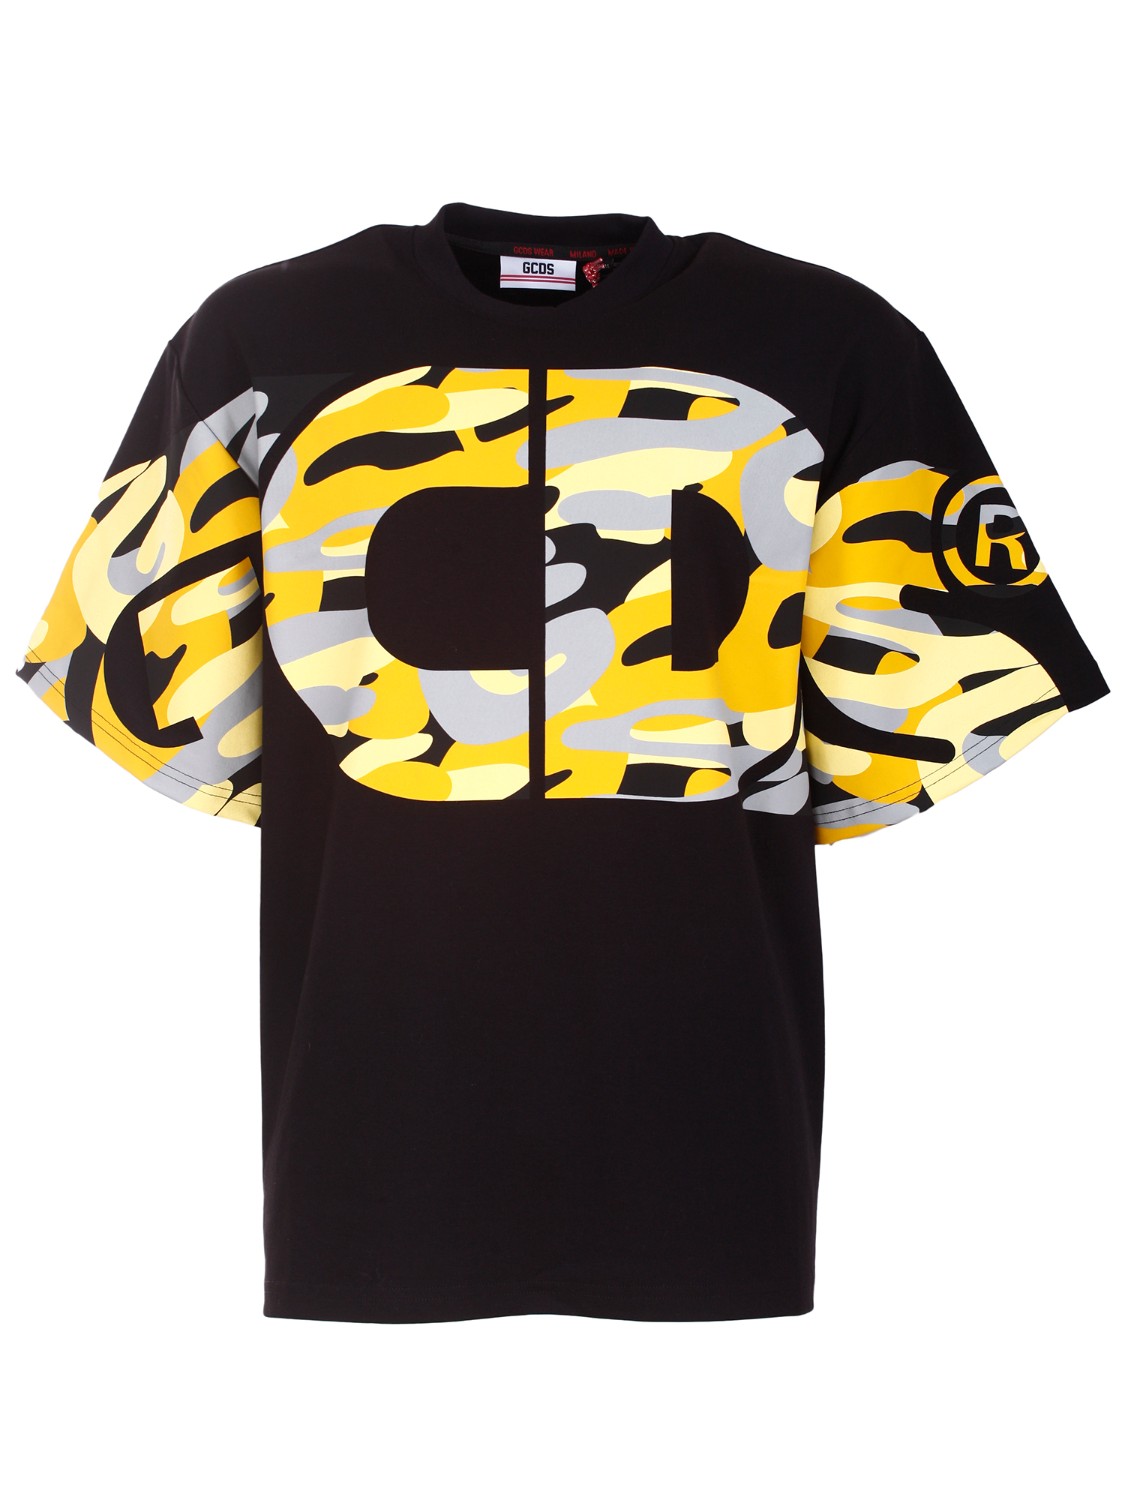 shop GCDS Saldi Maglia: GCDS t-shirt girocollo con maxi logo frontale.
Oversize fit.
Composizione: 100% cotone.
Fabbricato in Italia.. CC22M13S104-04 number 8134759